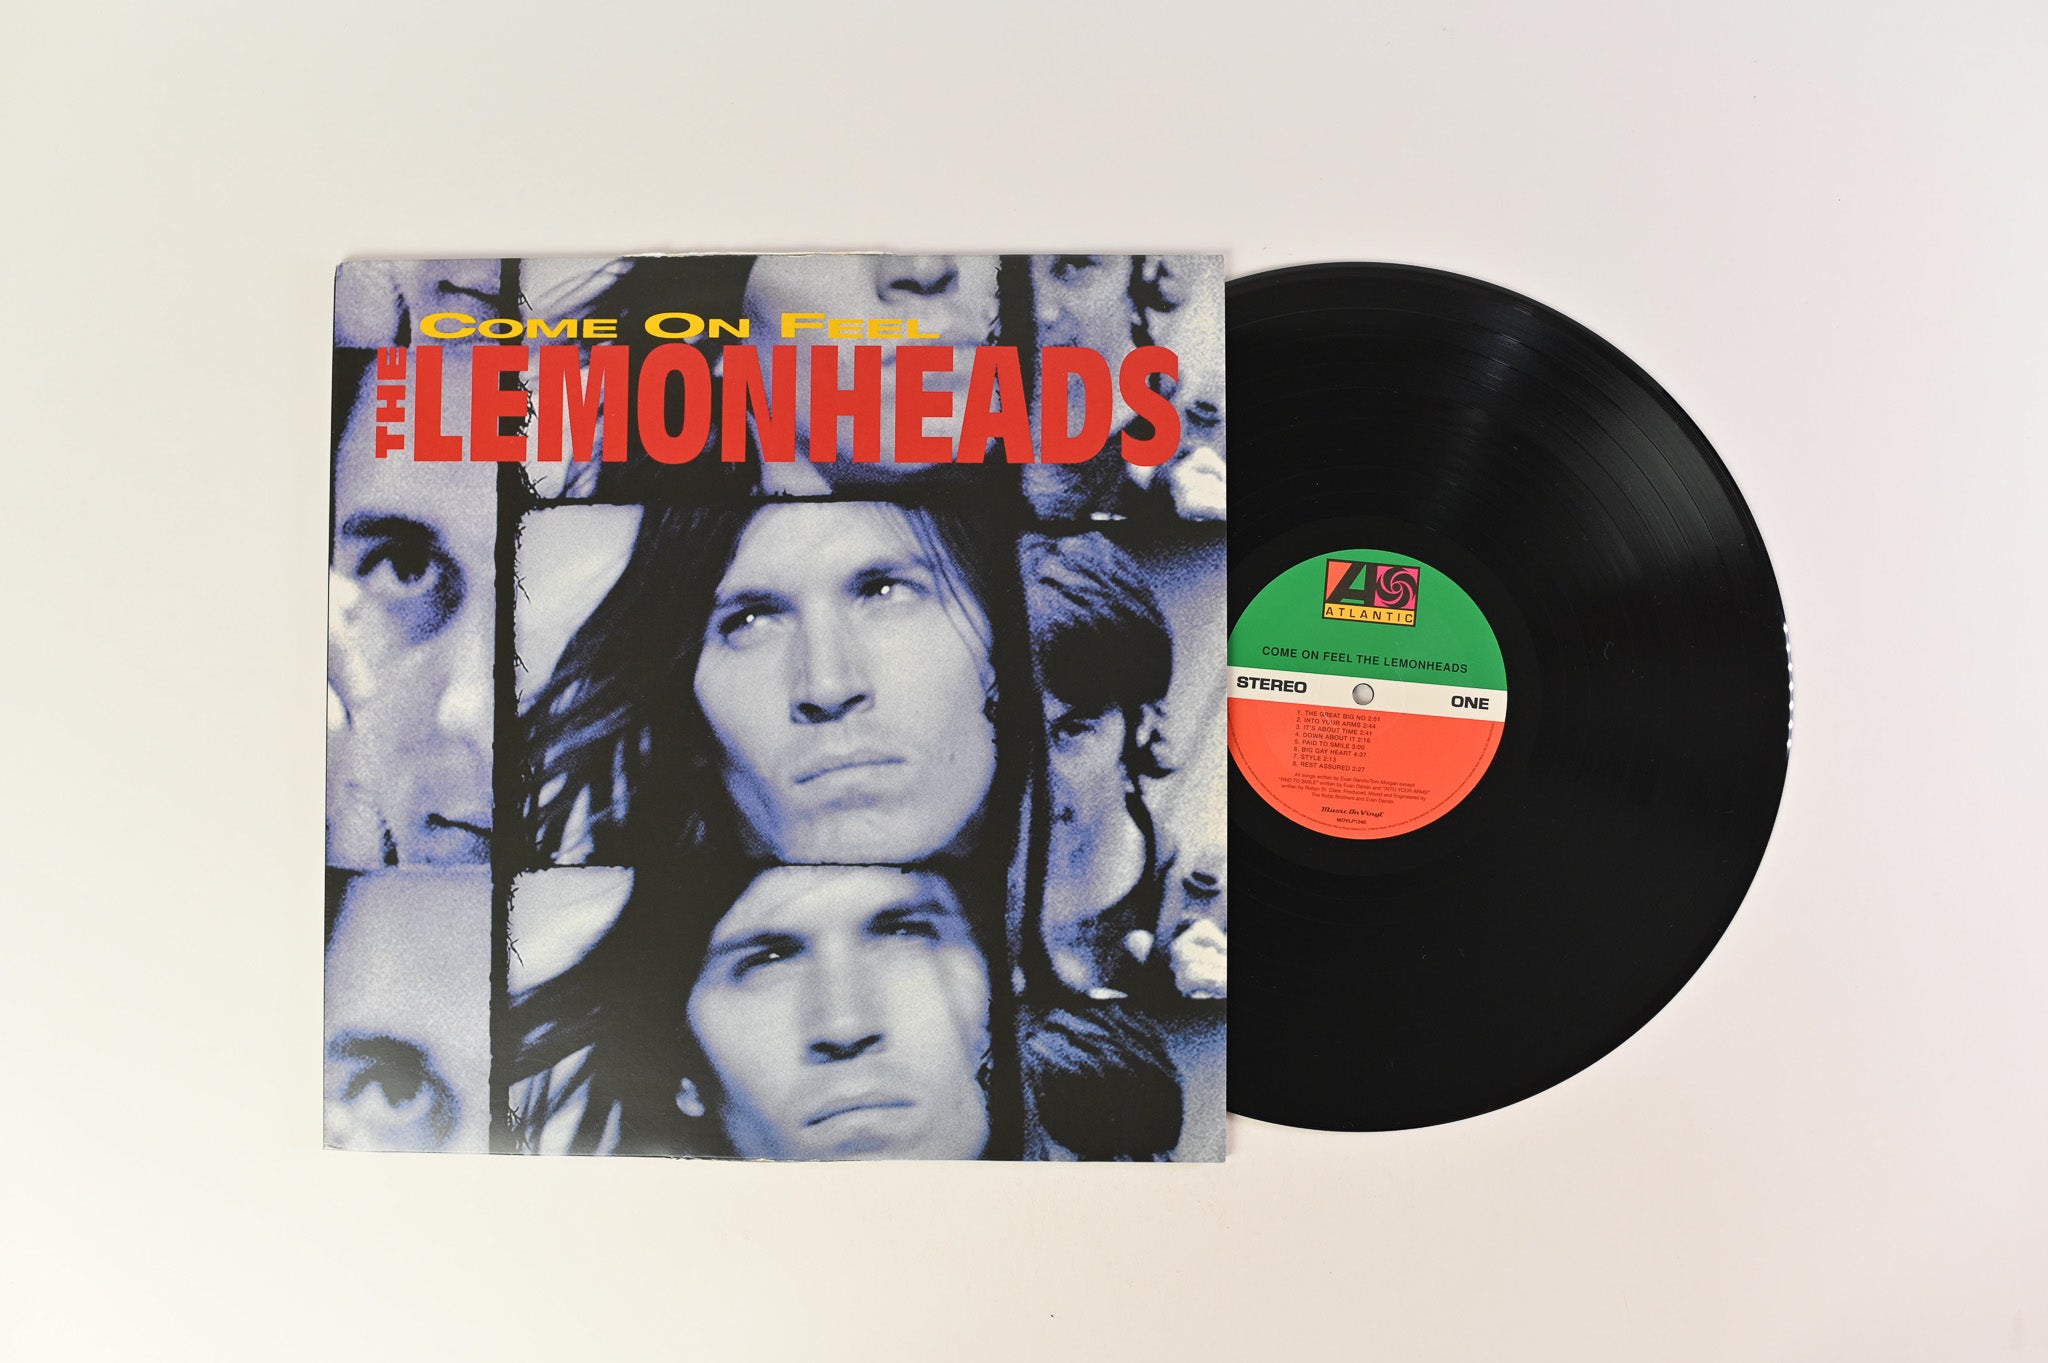 The Lemonheads - Come On Feel The Lemonheads on Music on Vinyl 180 Gram Reissue